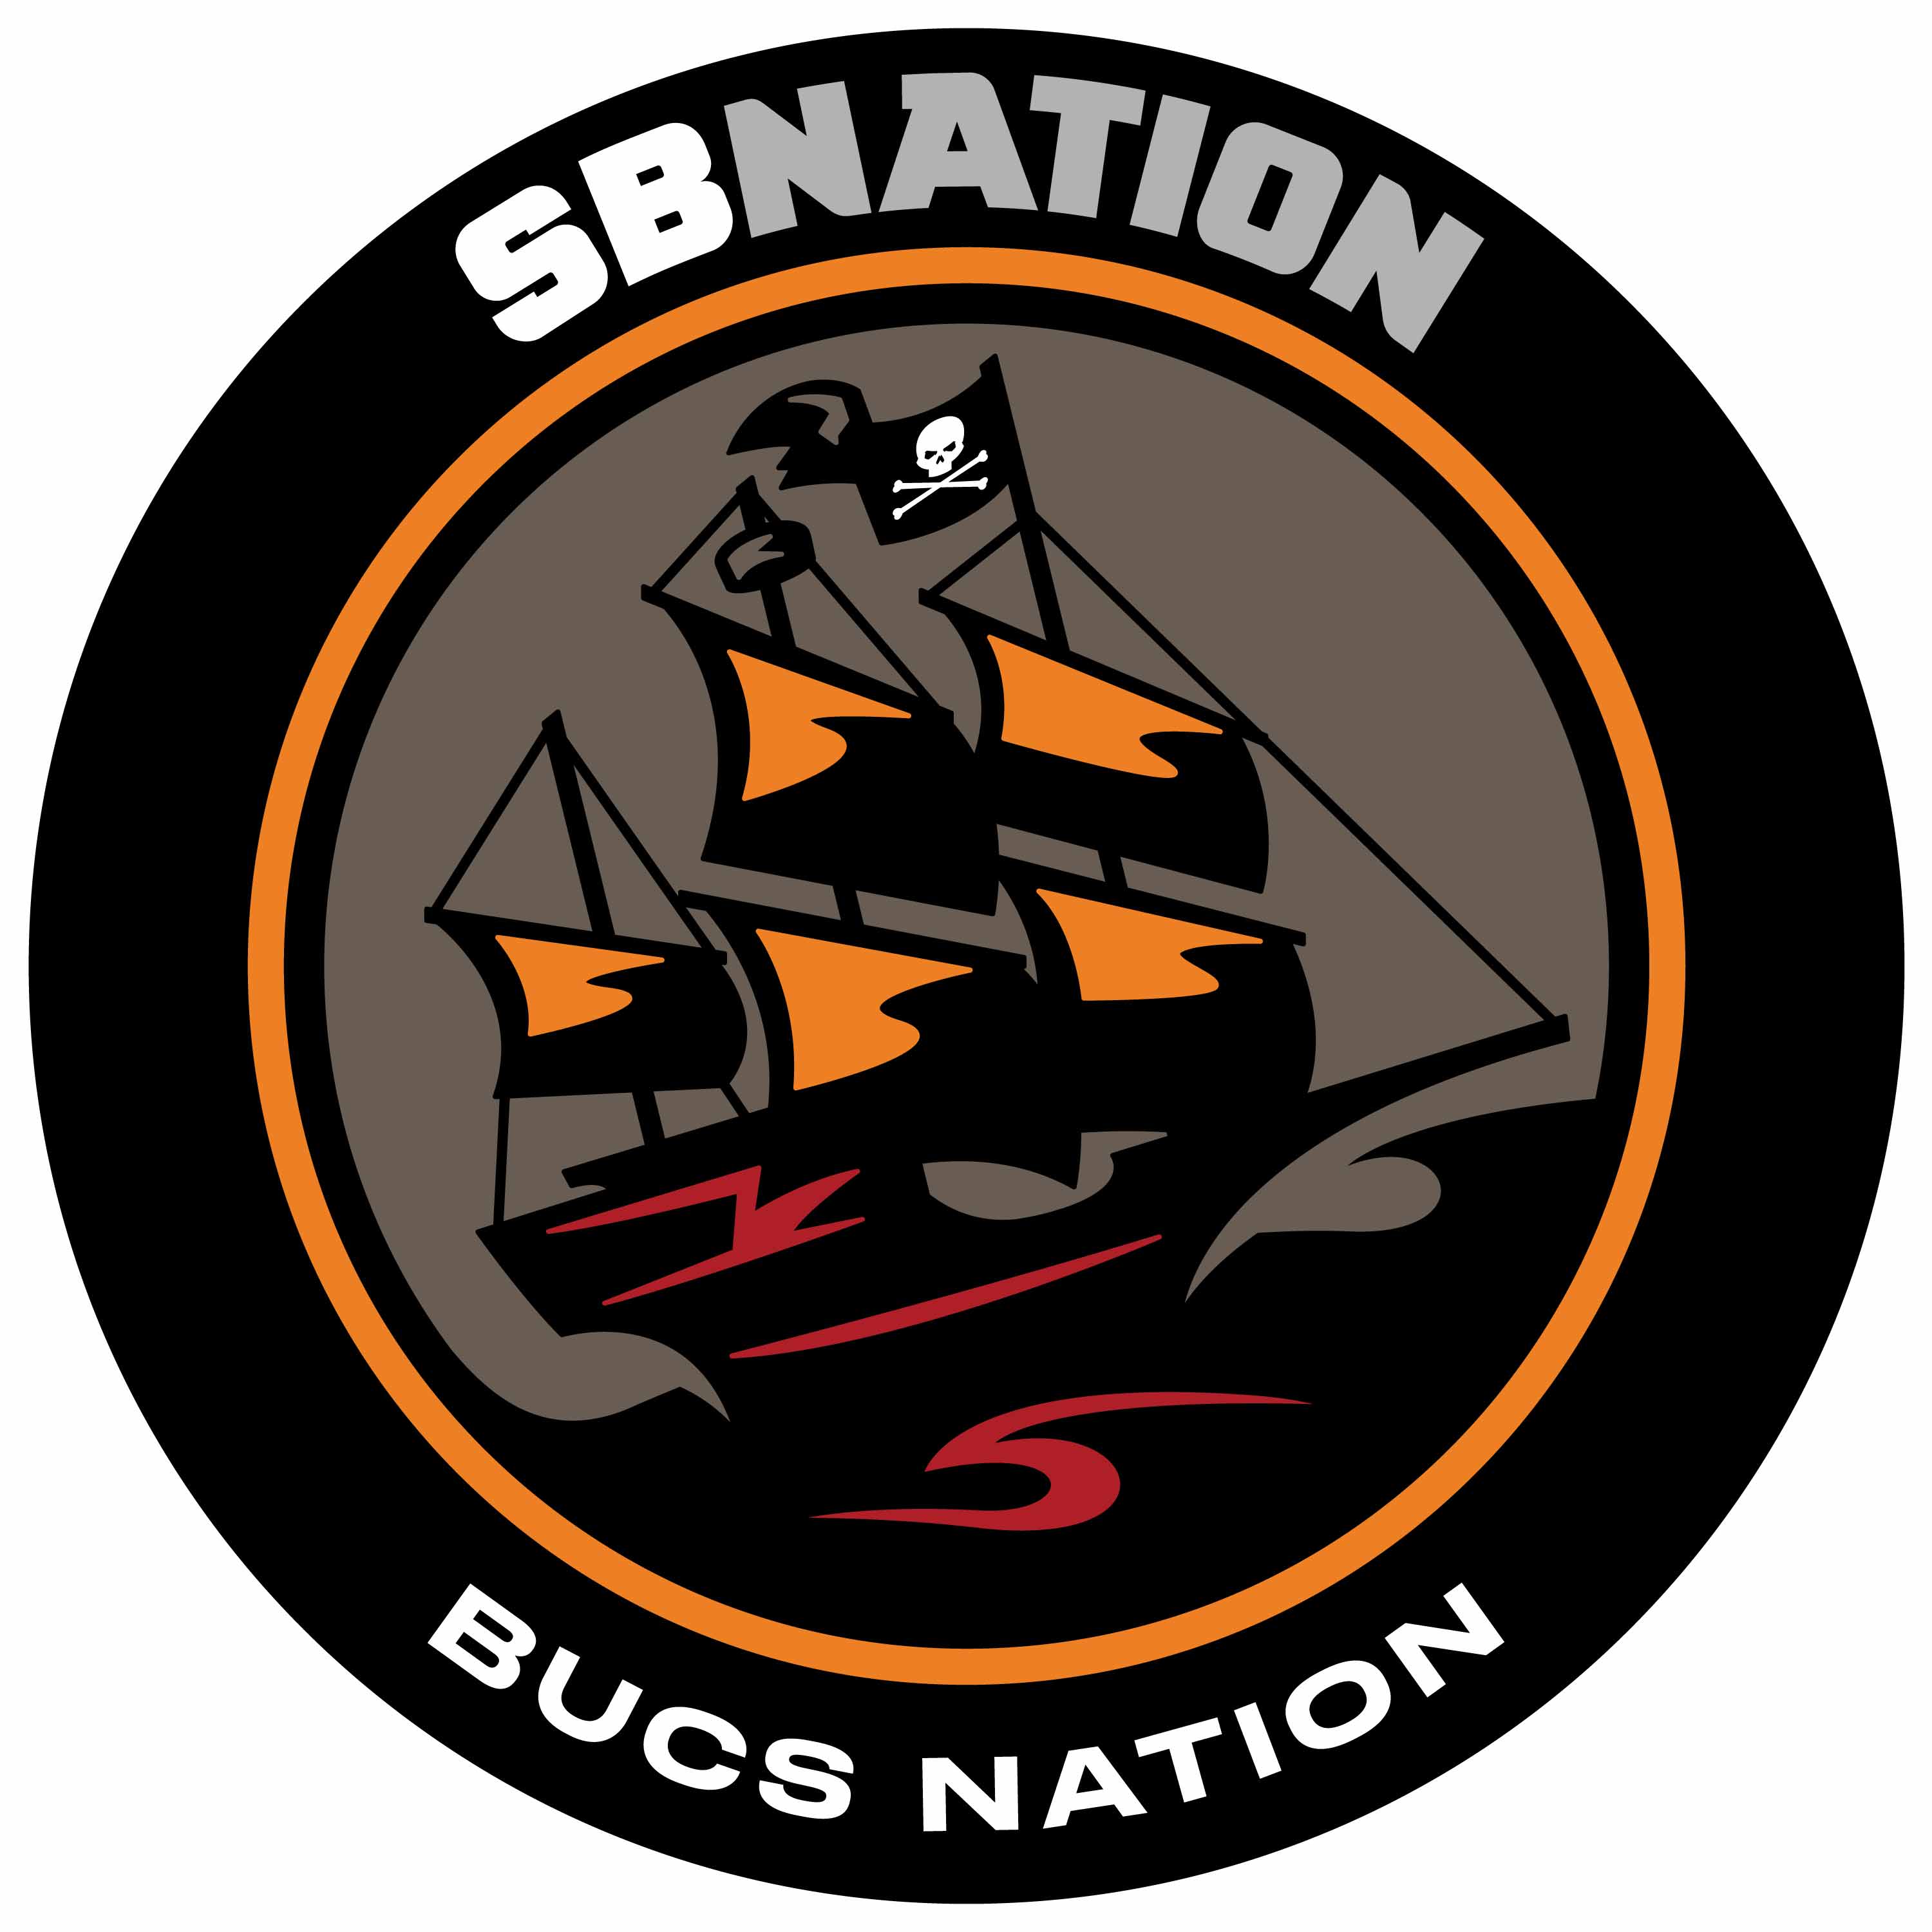 Bucs Nation